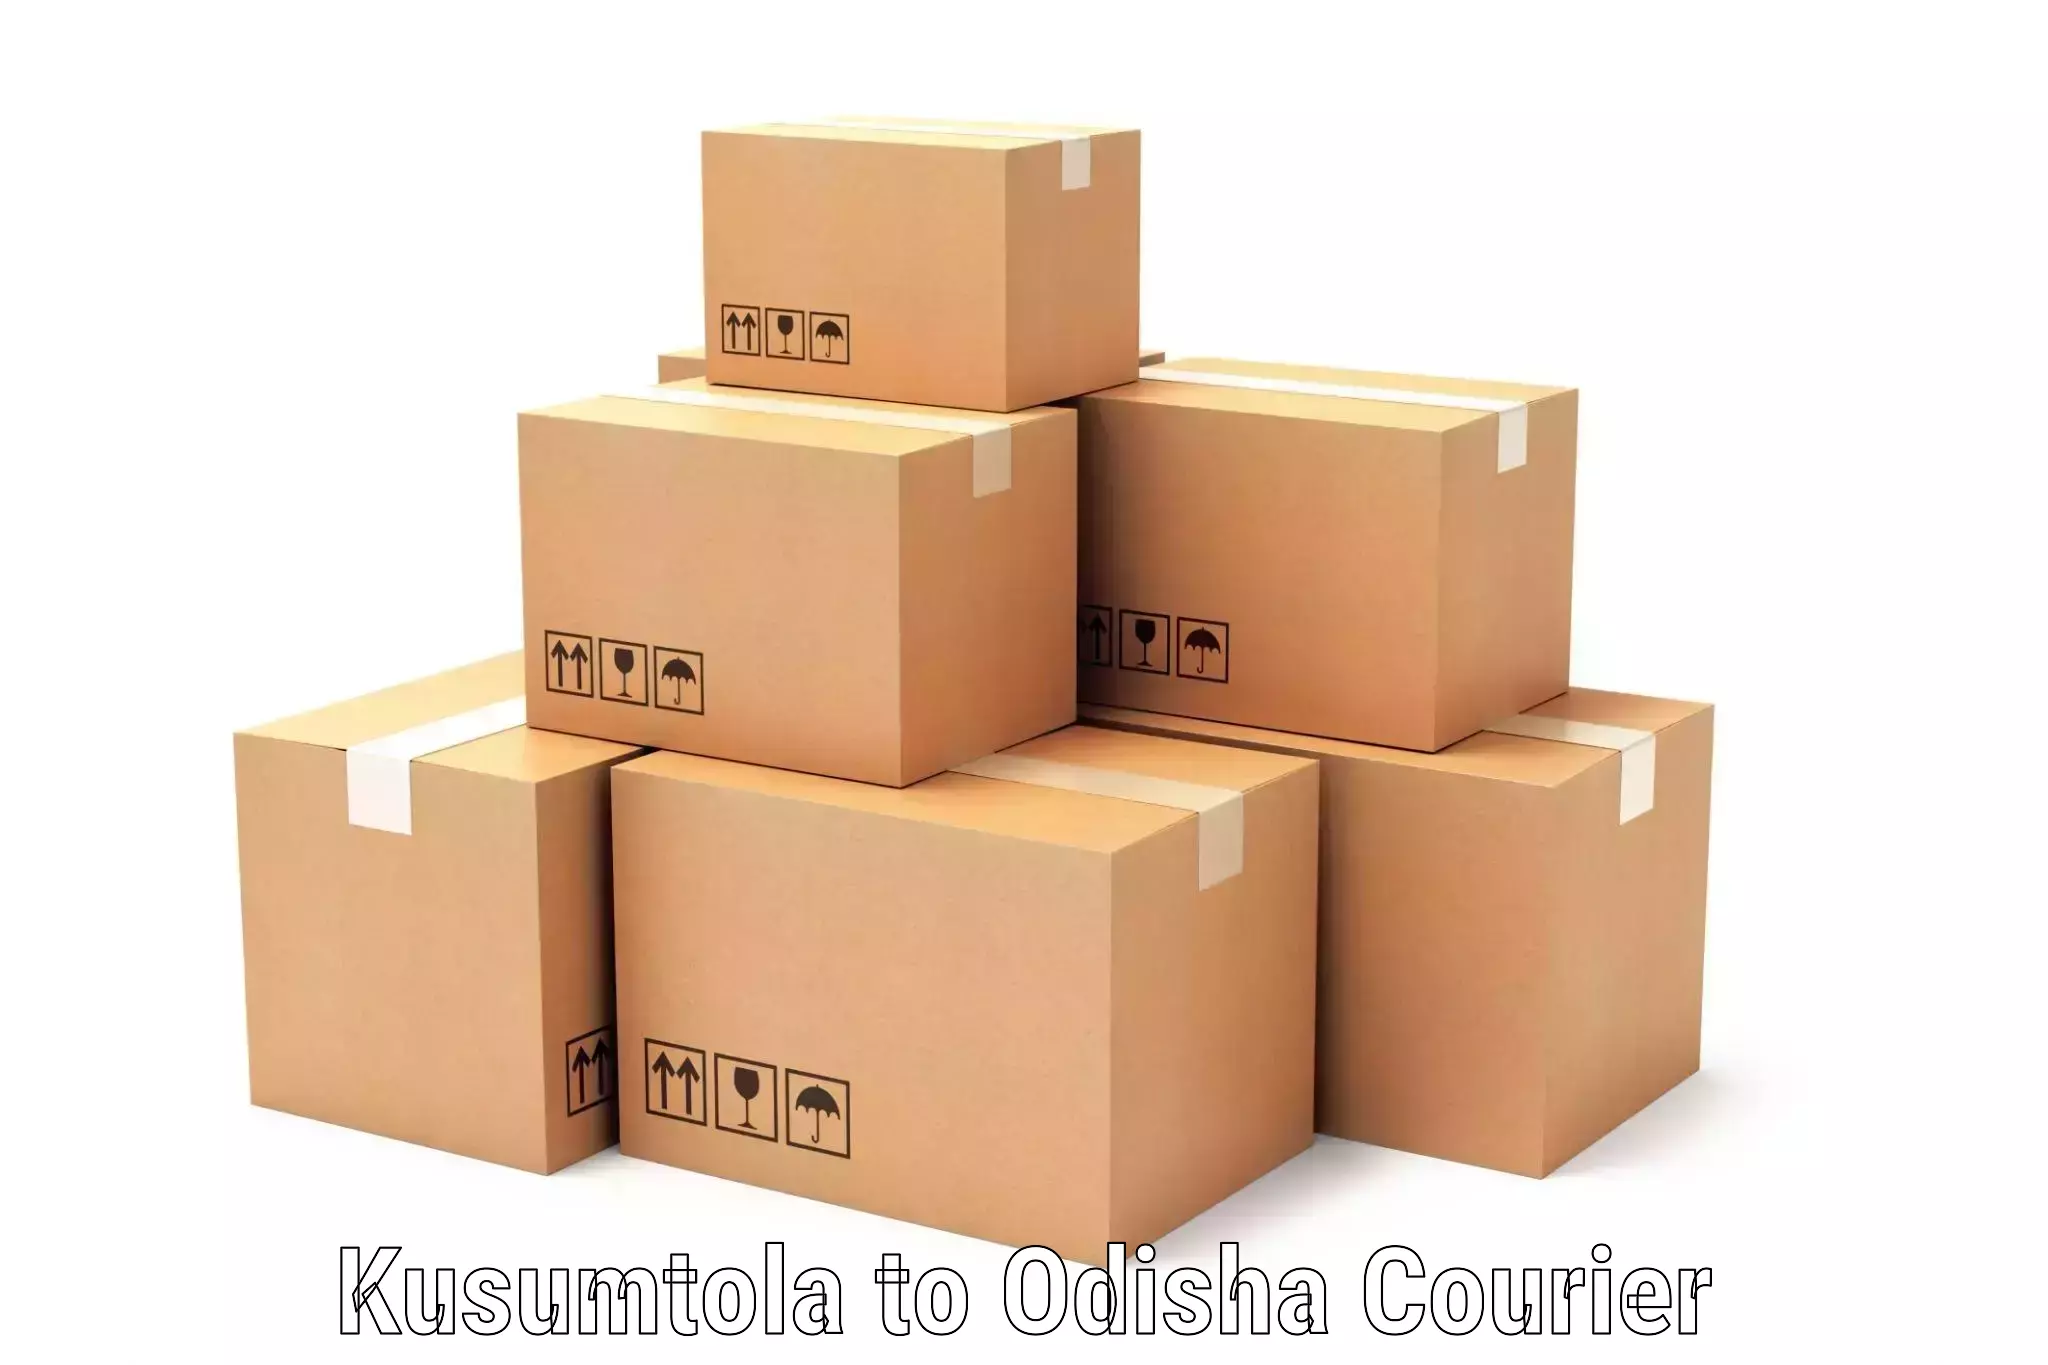 Smart parcel tracking Kusumtola to Odisha